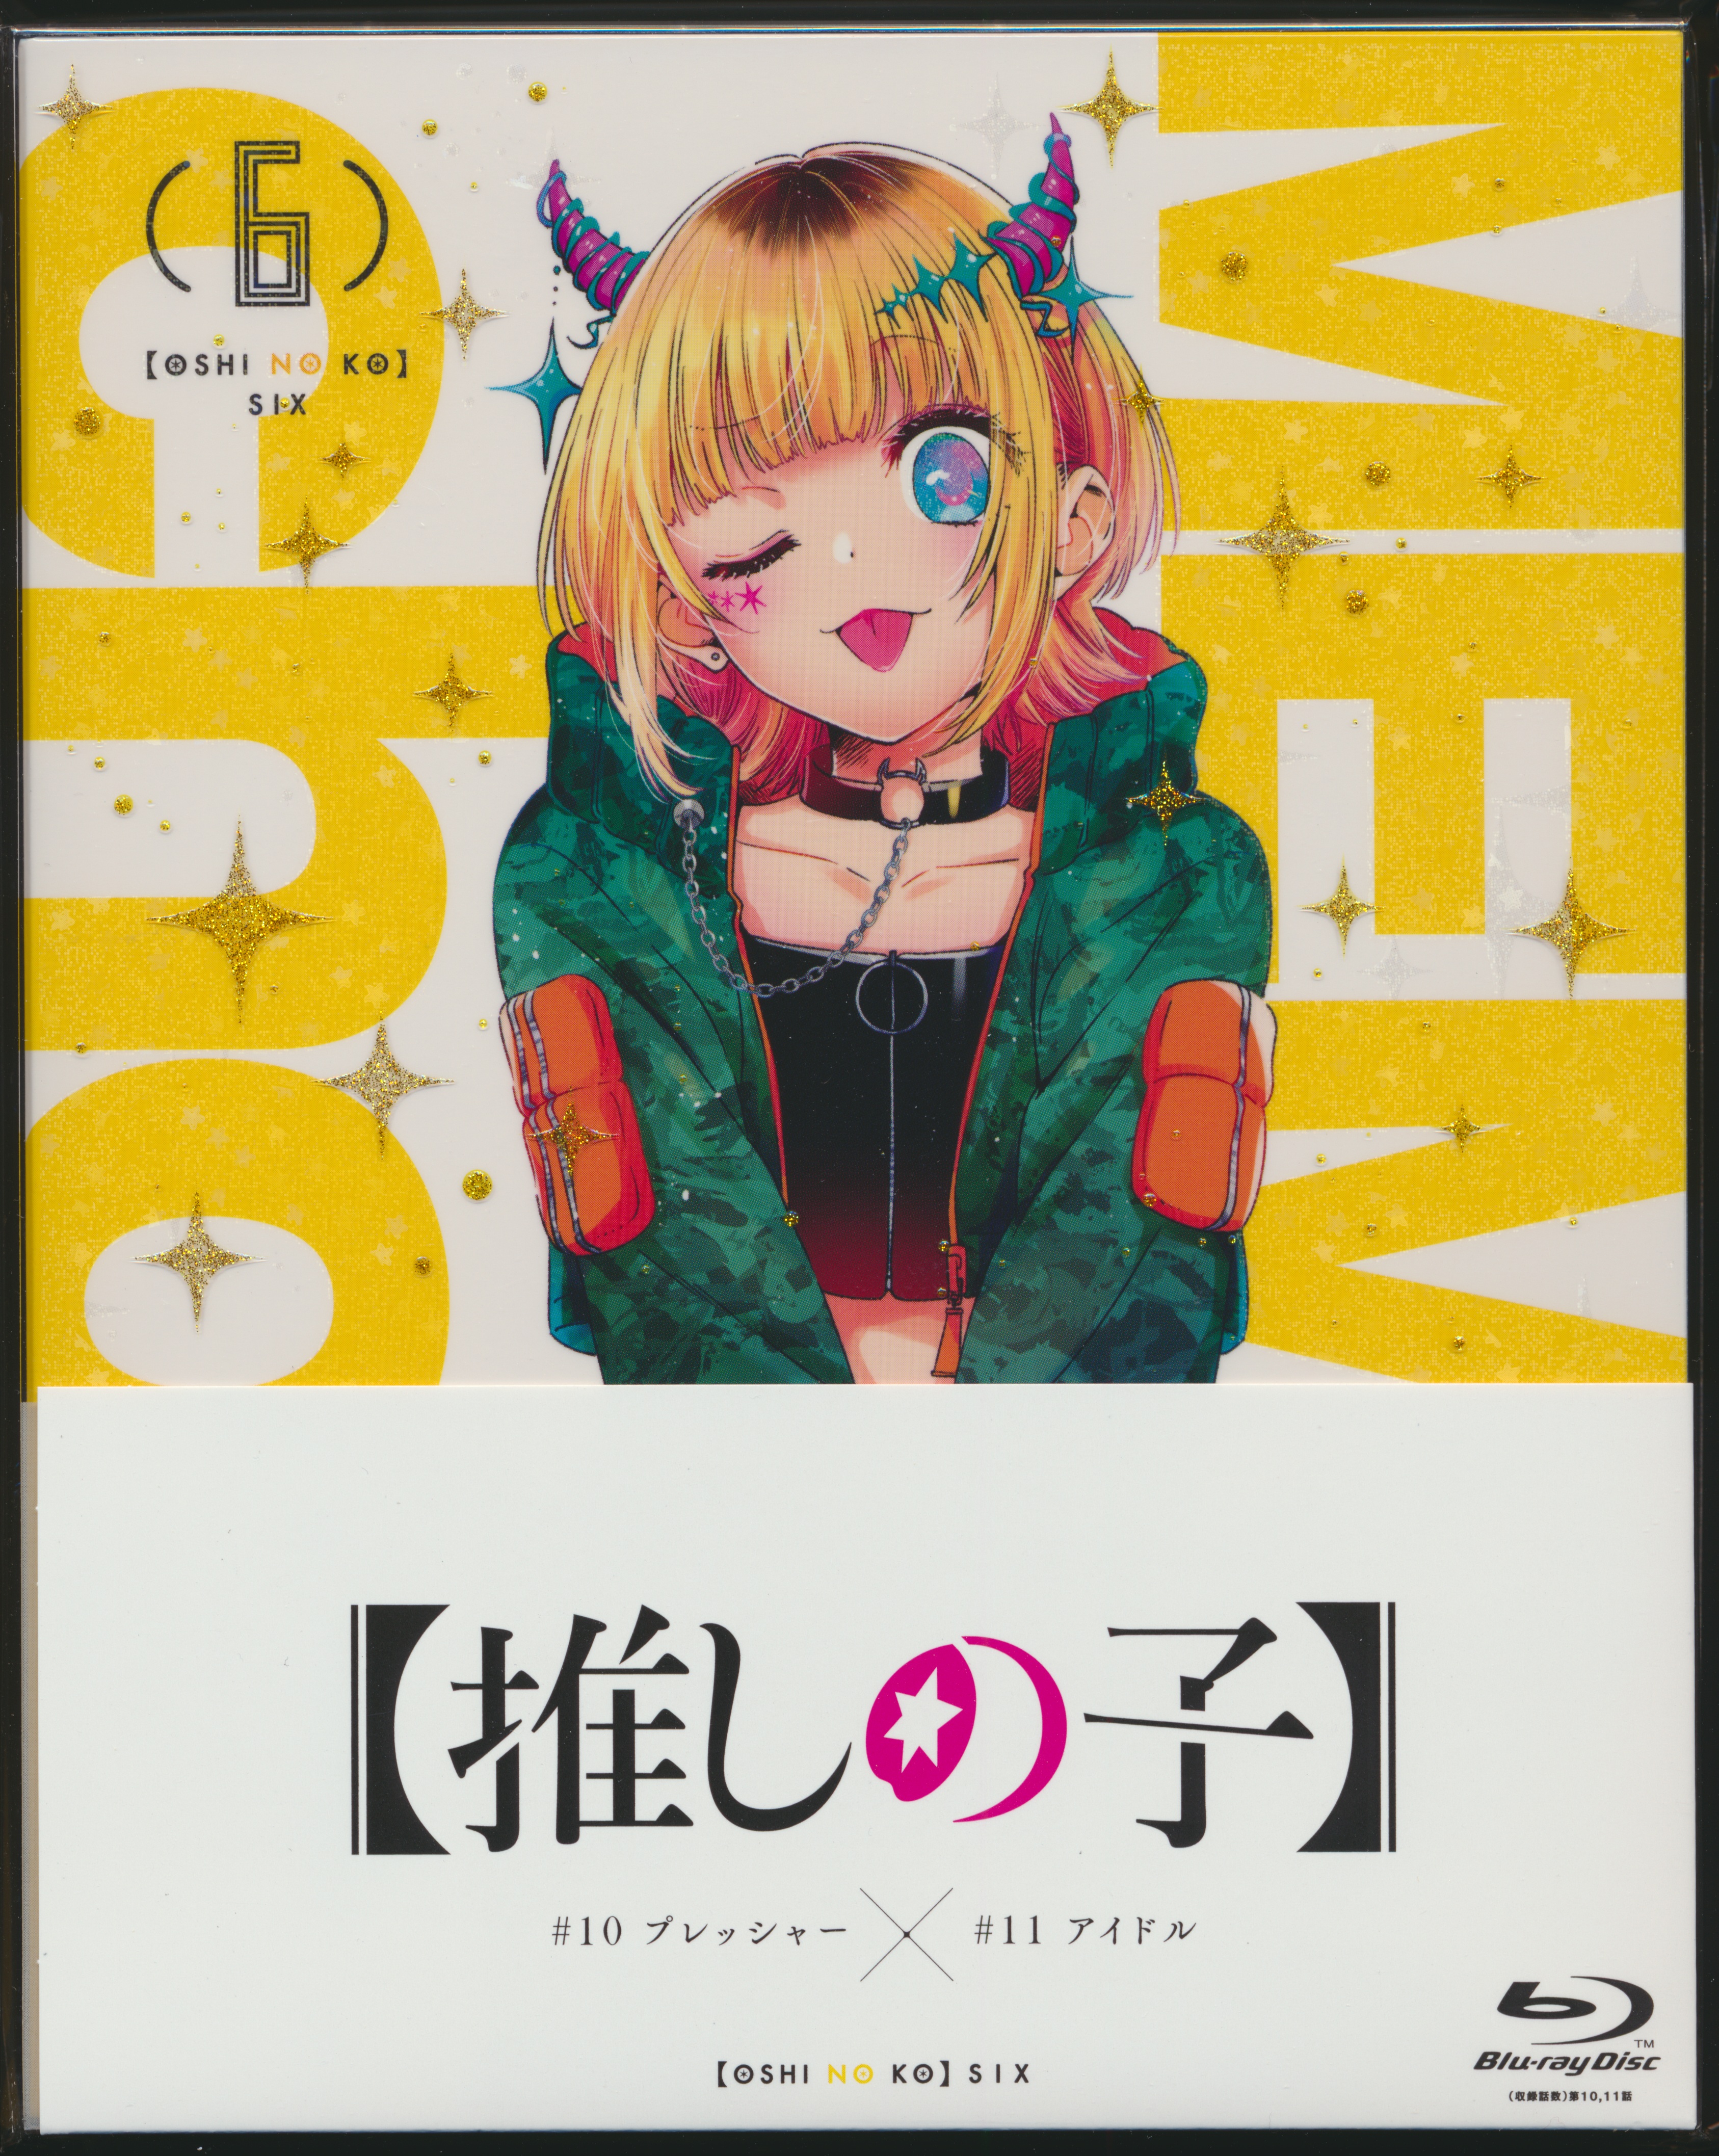 Manga Volume 6, Watashi no Oshi wa Akuyaku Reijou Wiki